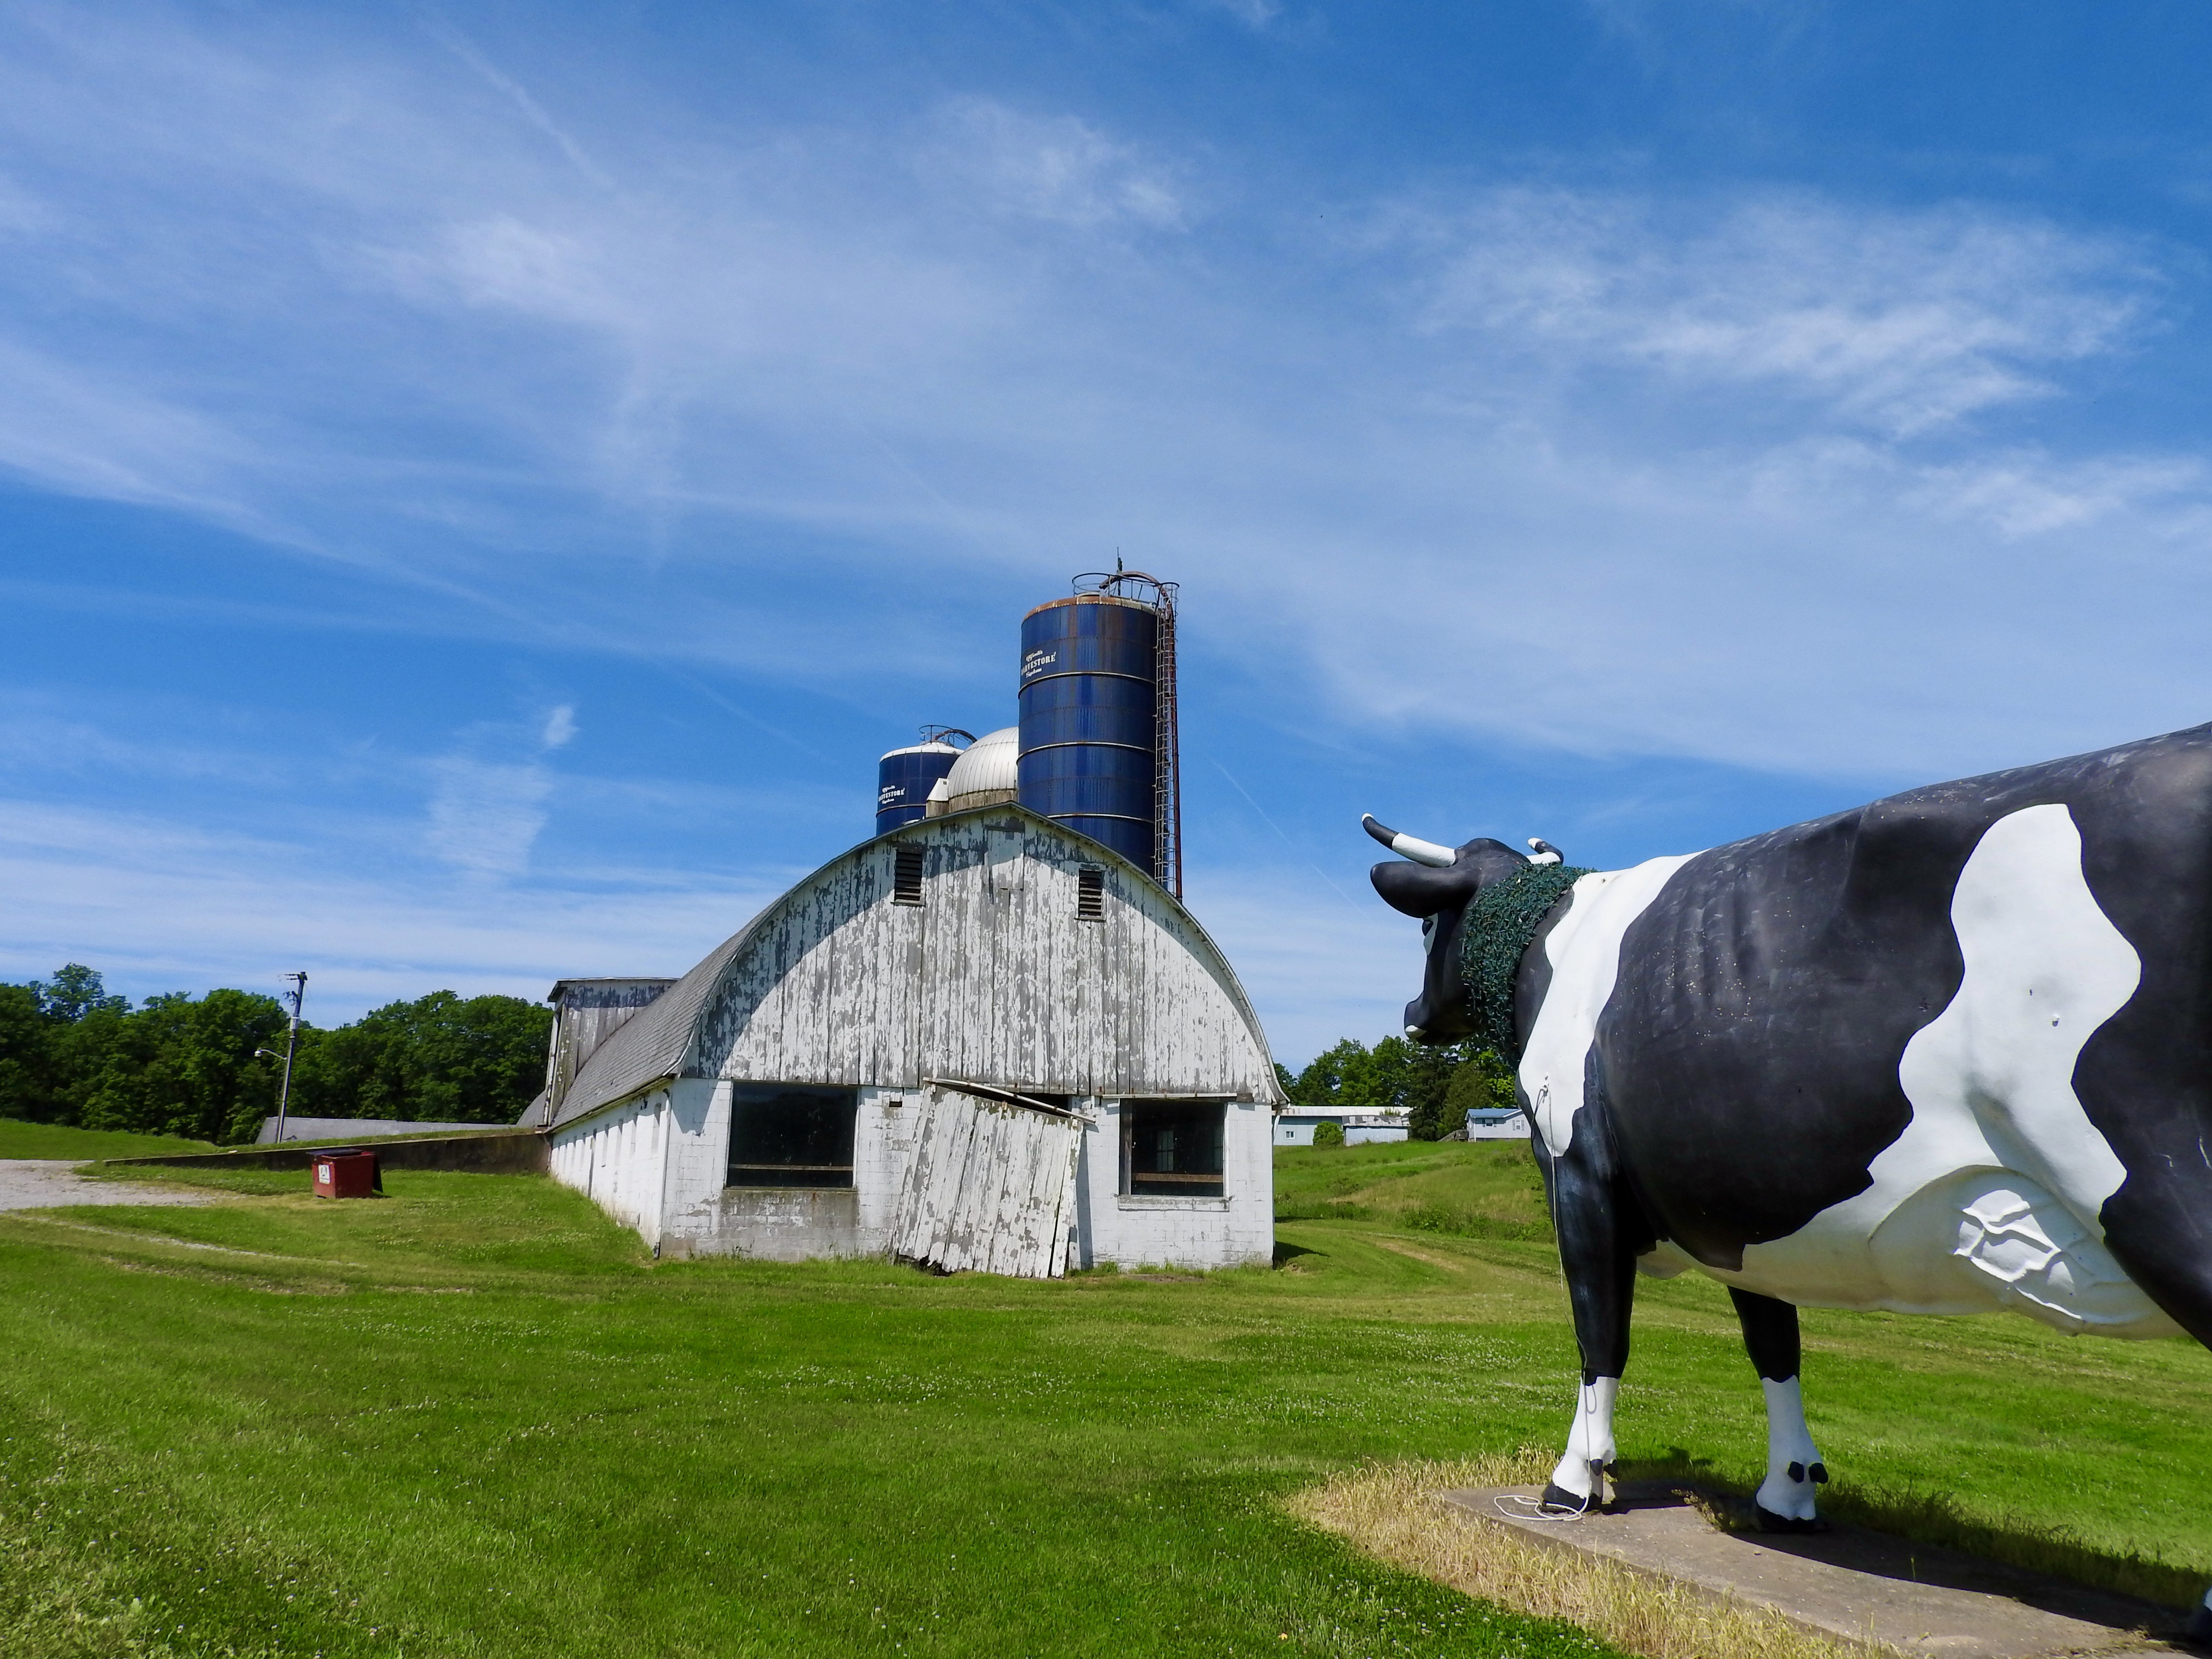 The Big Cow near Sligo, Pennsylvania